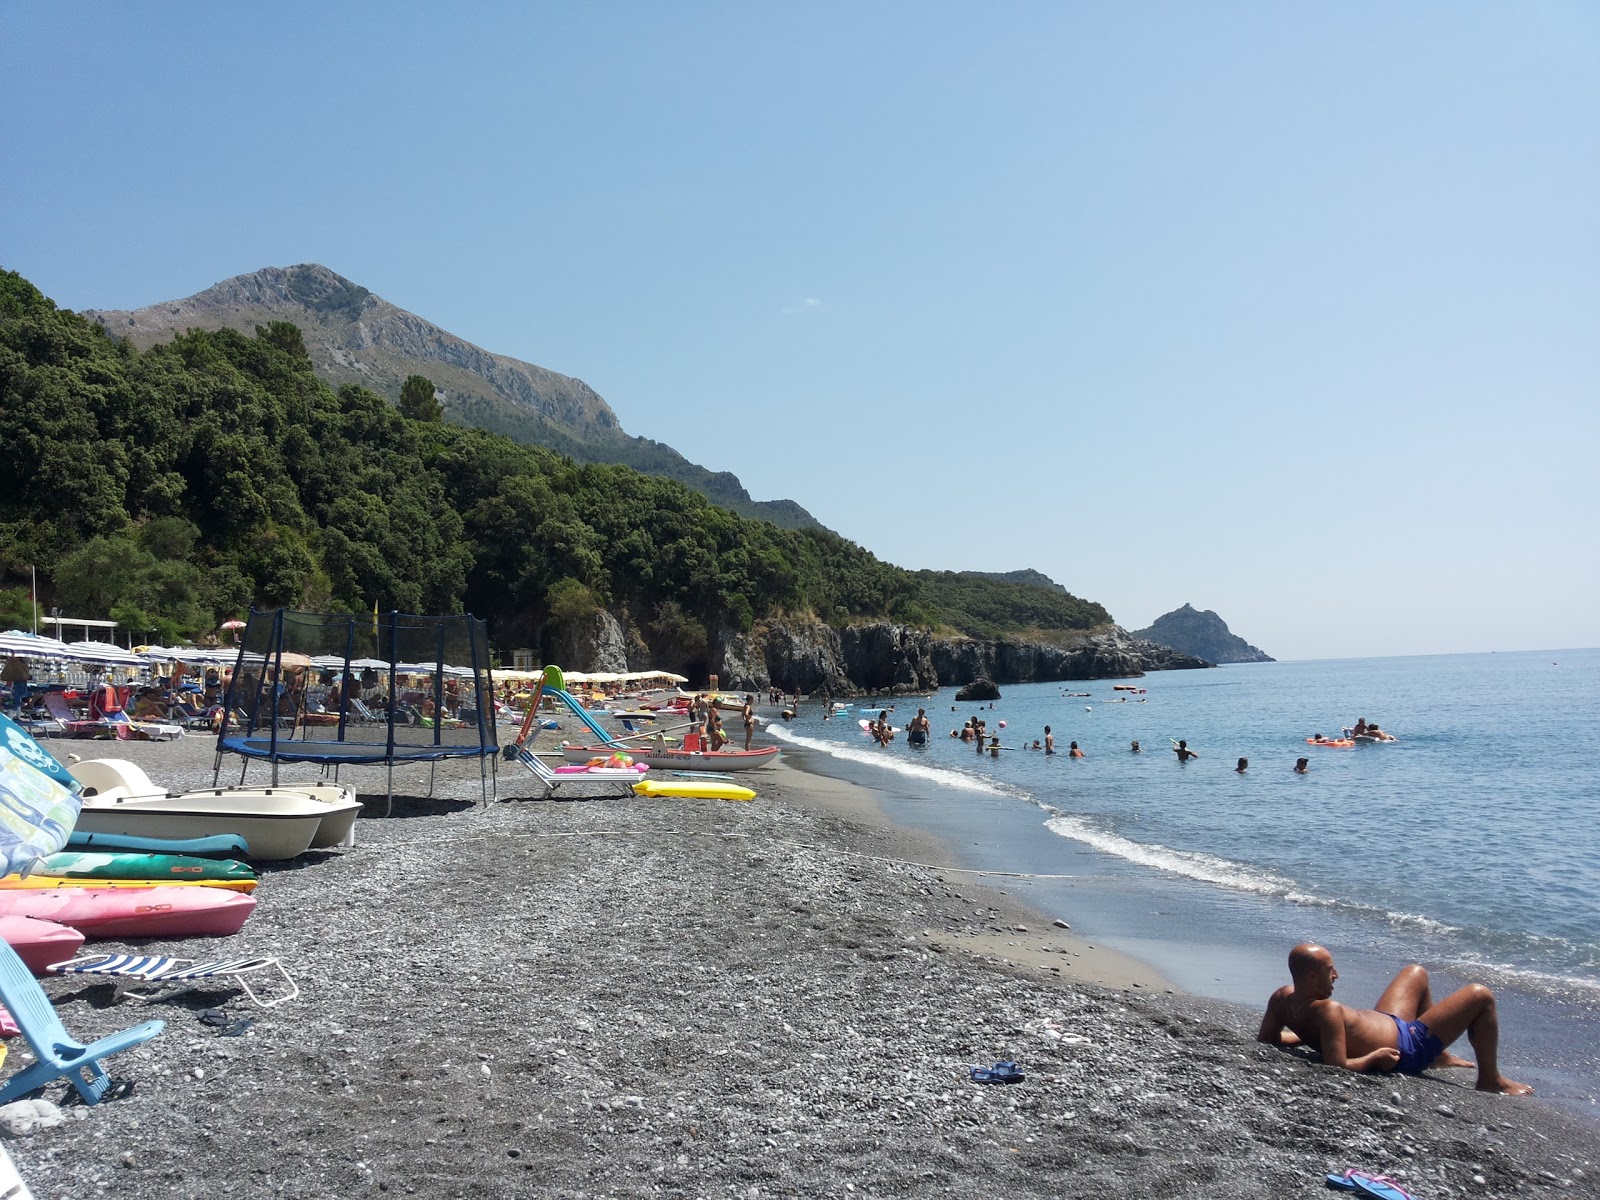 Photo of Spiaggia di Macarro with small bay